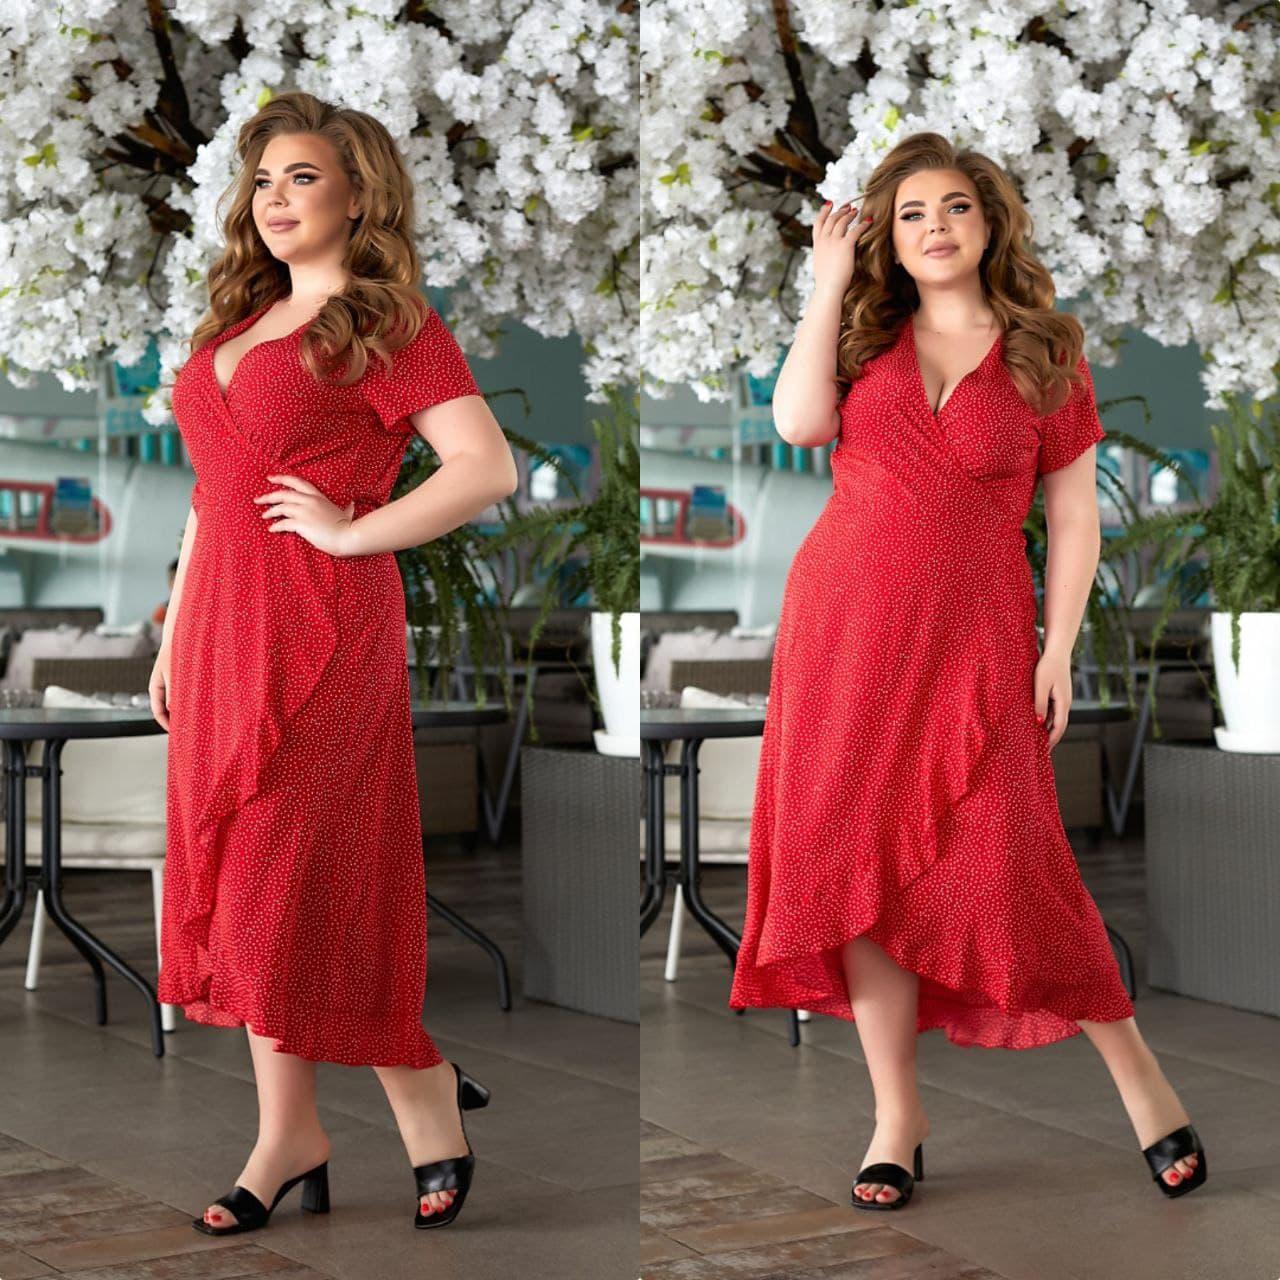 Сукня жіноча літній великий розмір на запах 2172 (48-50,52-54,56-58) кольори: пудра, червоний, бежевий, бірюза) СП